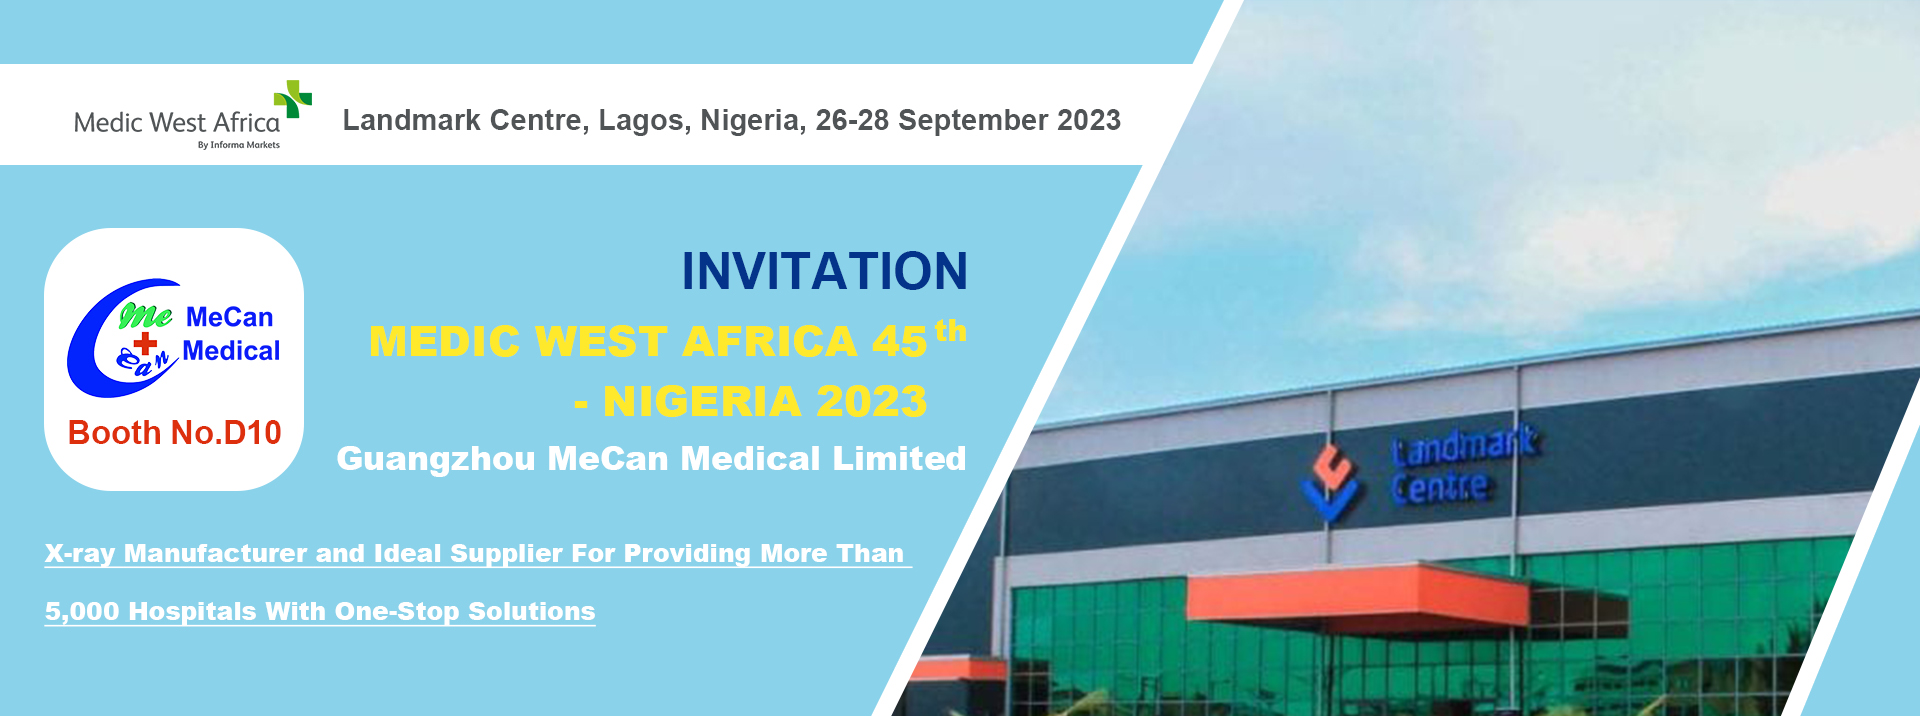 MeCan Medical в Medic West Africa 45th в Нигерия